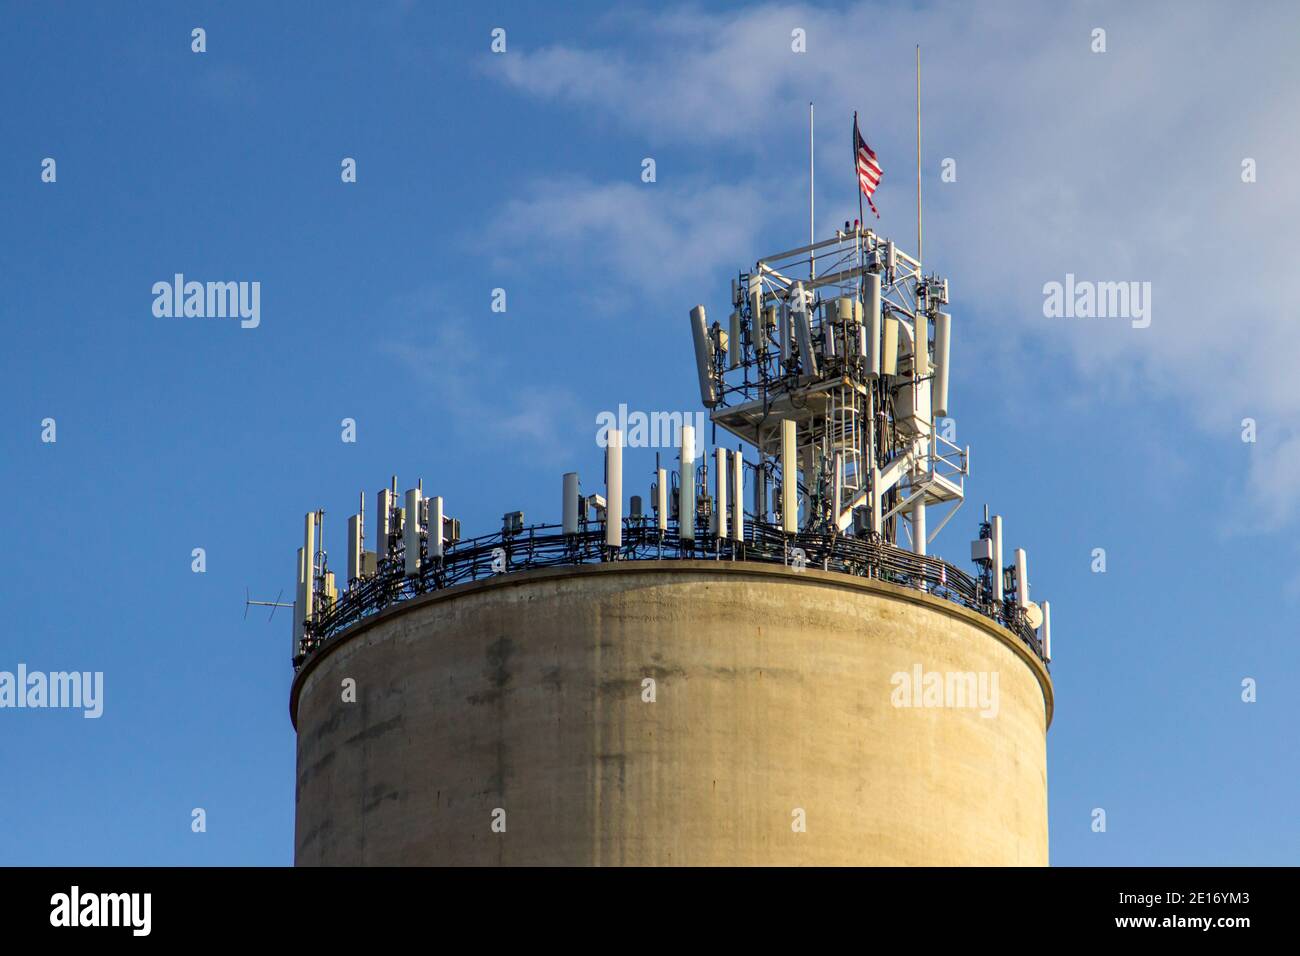 La tradición se une a la tecnología. 5g torre de teléfono celular en la parte superior de un antiguo silo granero. Foto de stock